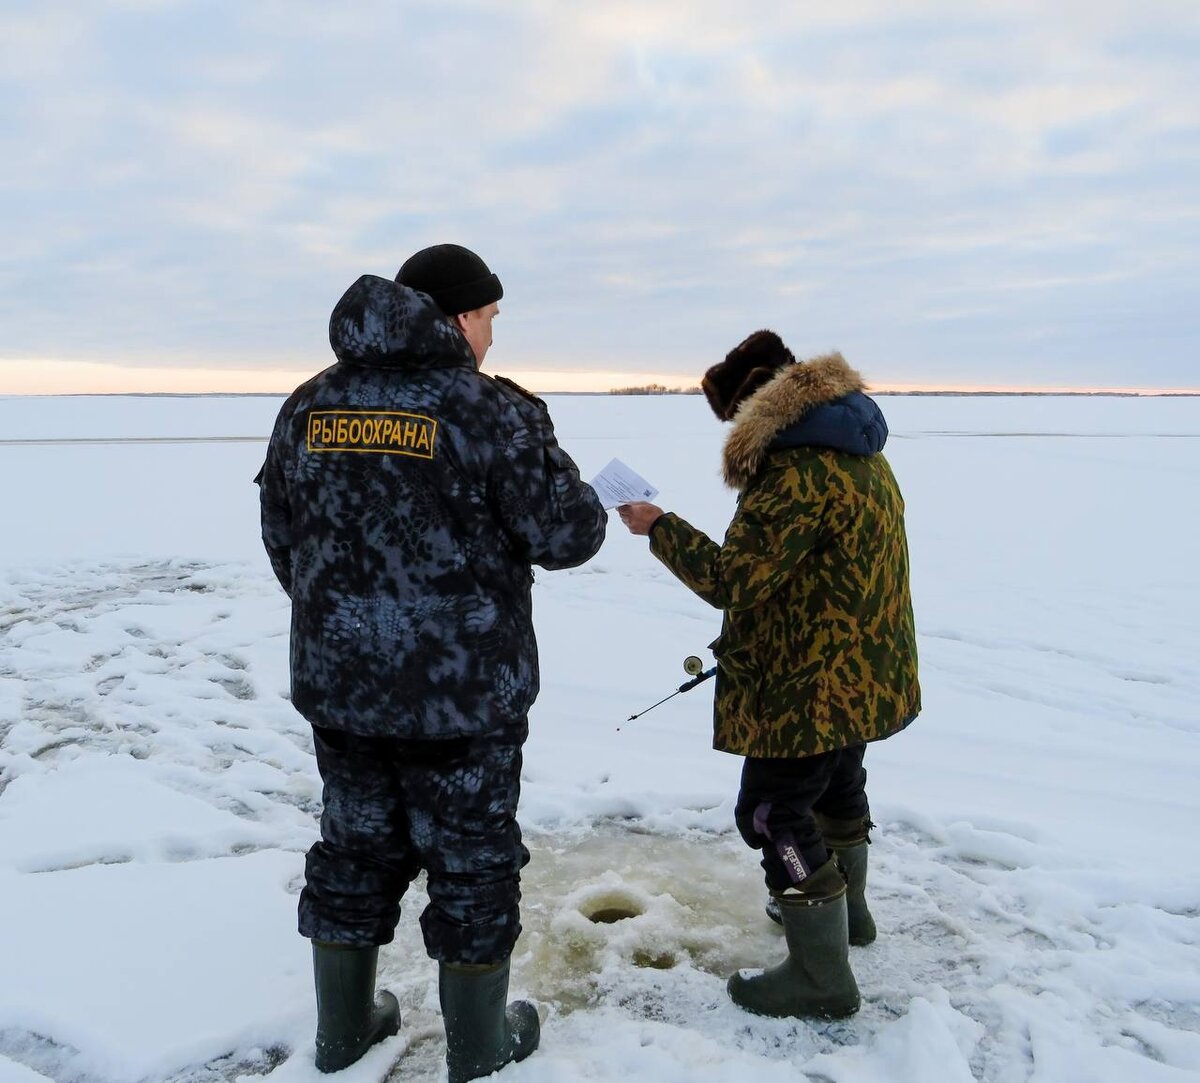 Инспектор рыбоохраны в деле. Фото из открытых источников "Яндекс картинки".